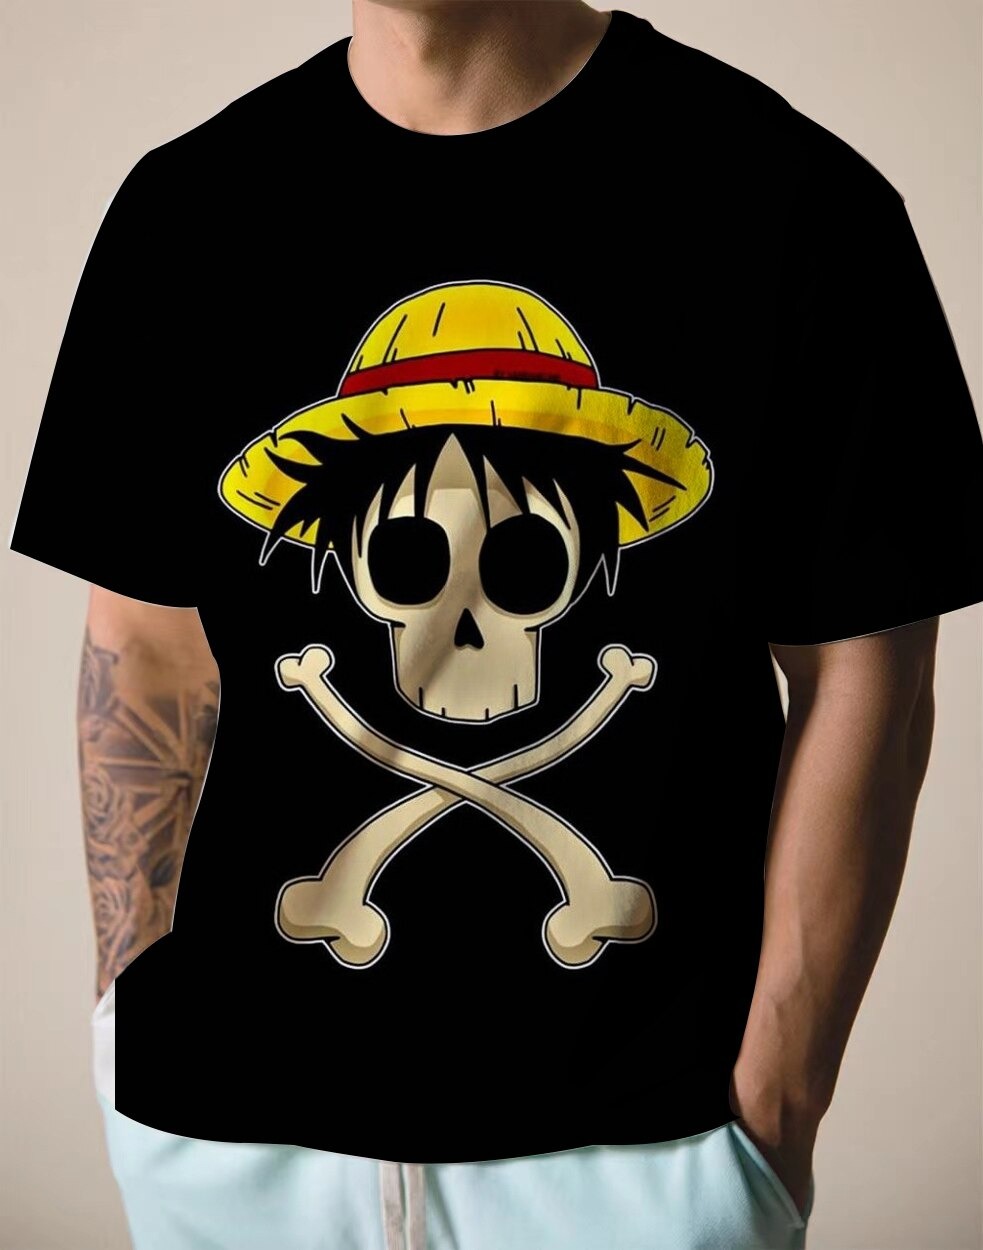 T-shirt enfant geek - One Piece Skull